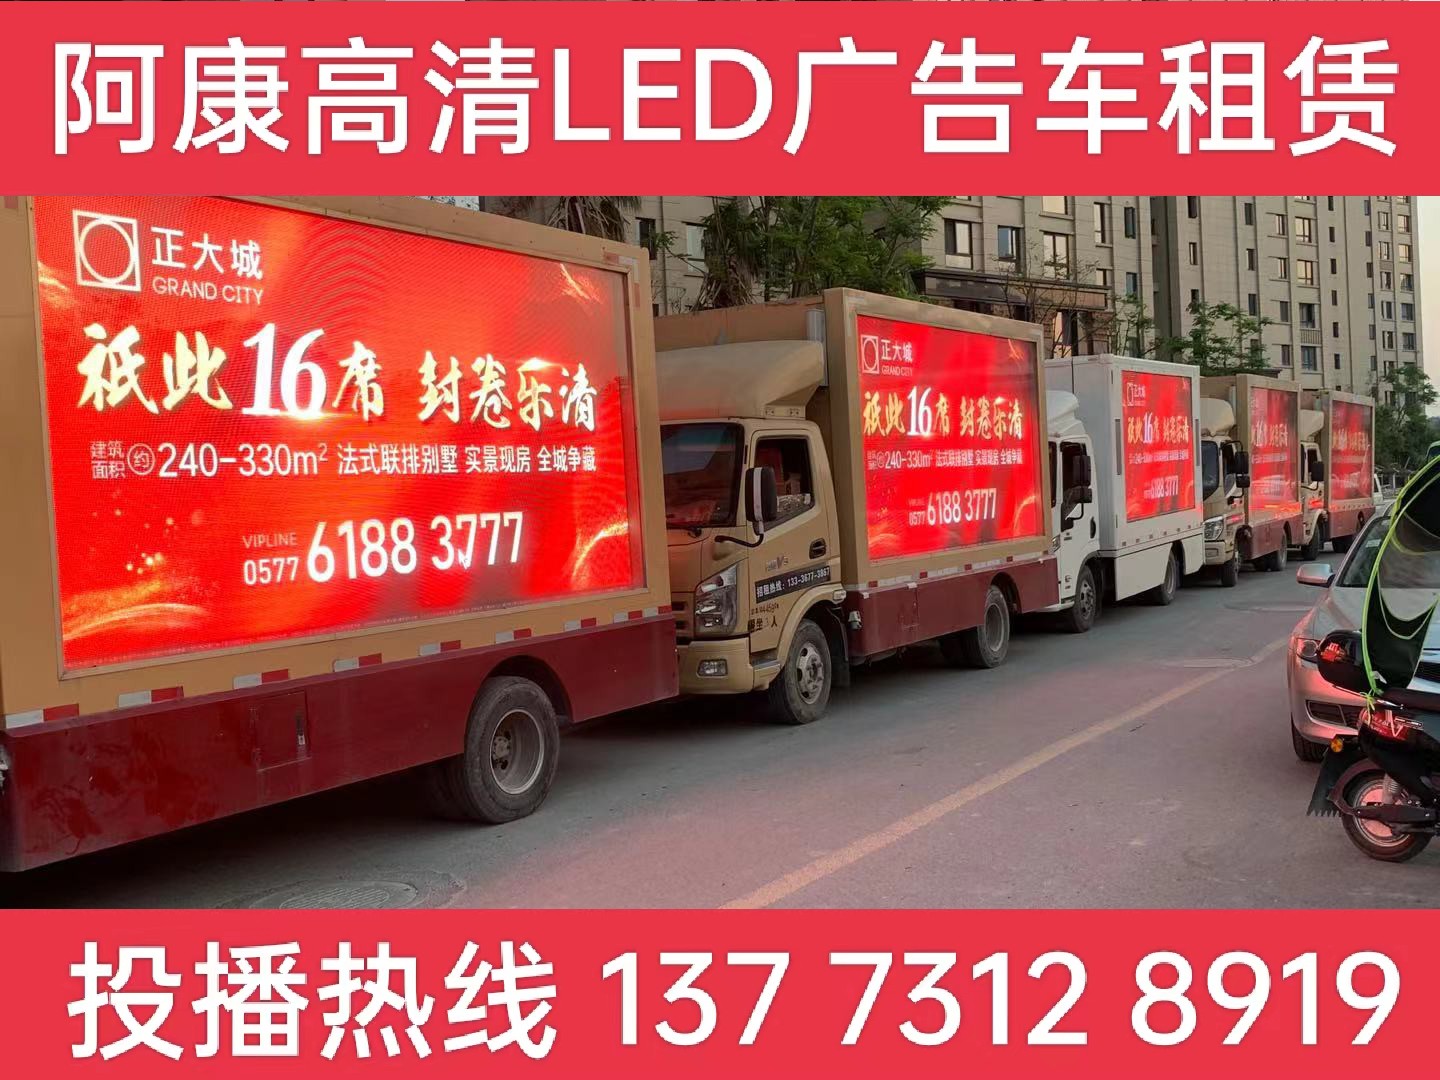 京口区LED广告车出租